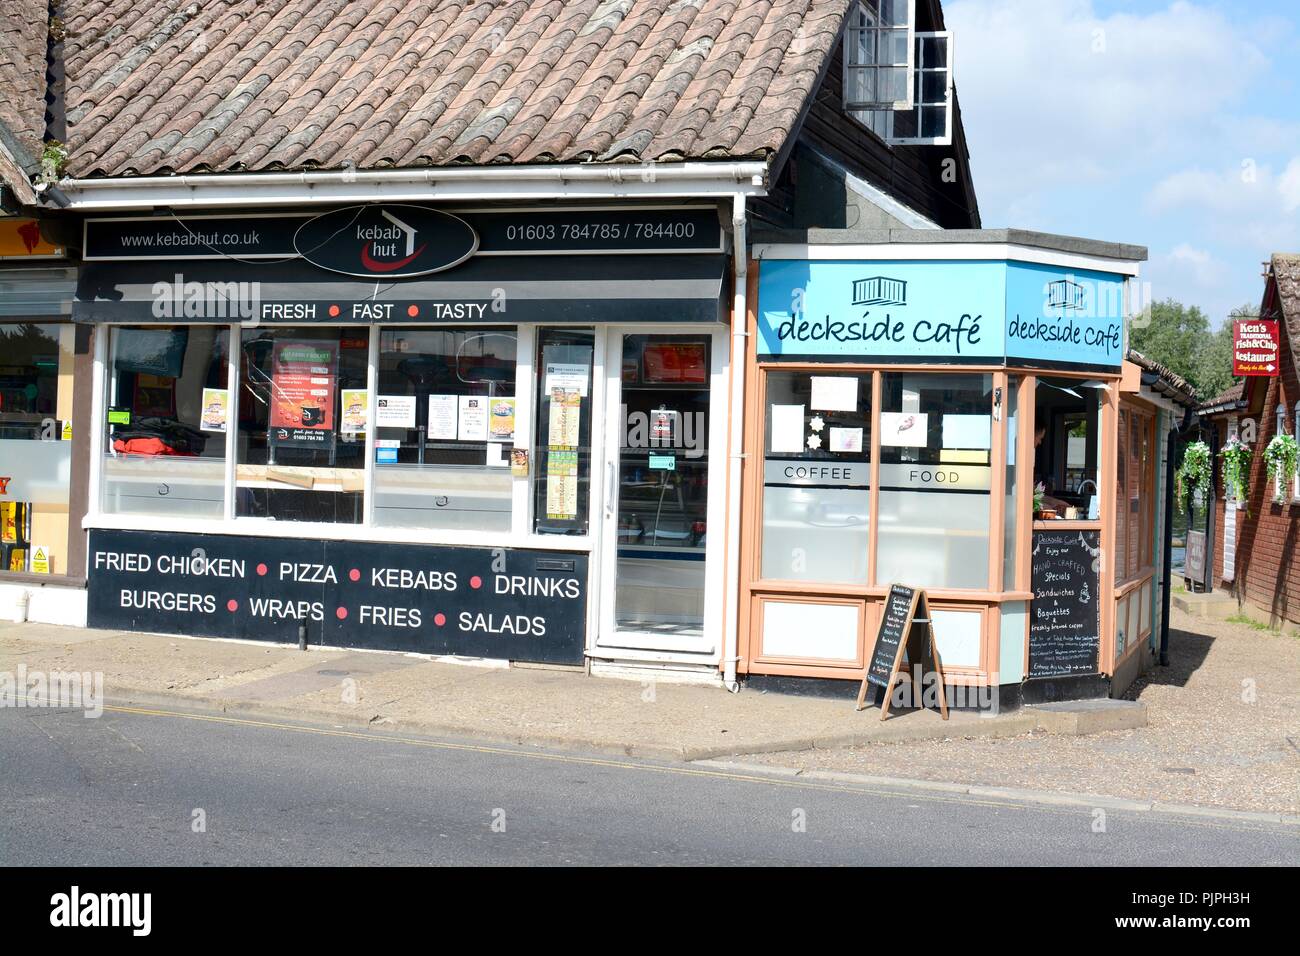 Dockside cafe and kebab hut, Wroxham, Norfolk, England, UK Stock Photo